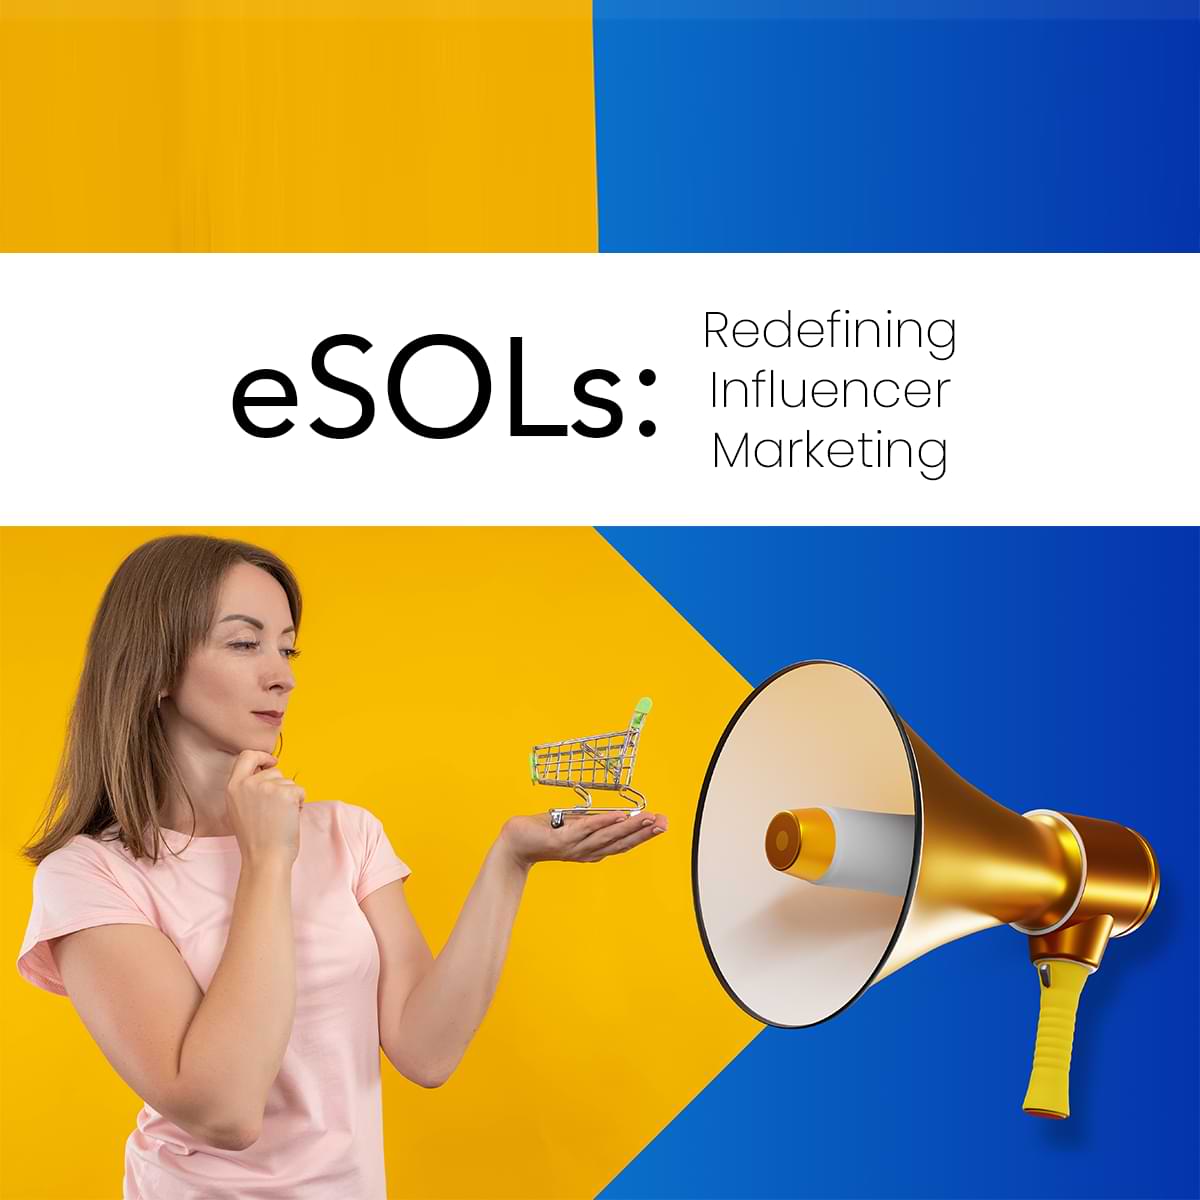 eSOLs: Redefining Influencer Marketing in Digital Commerce